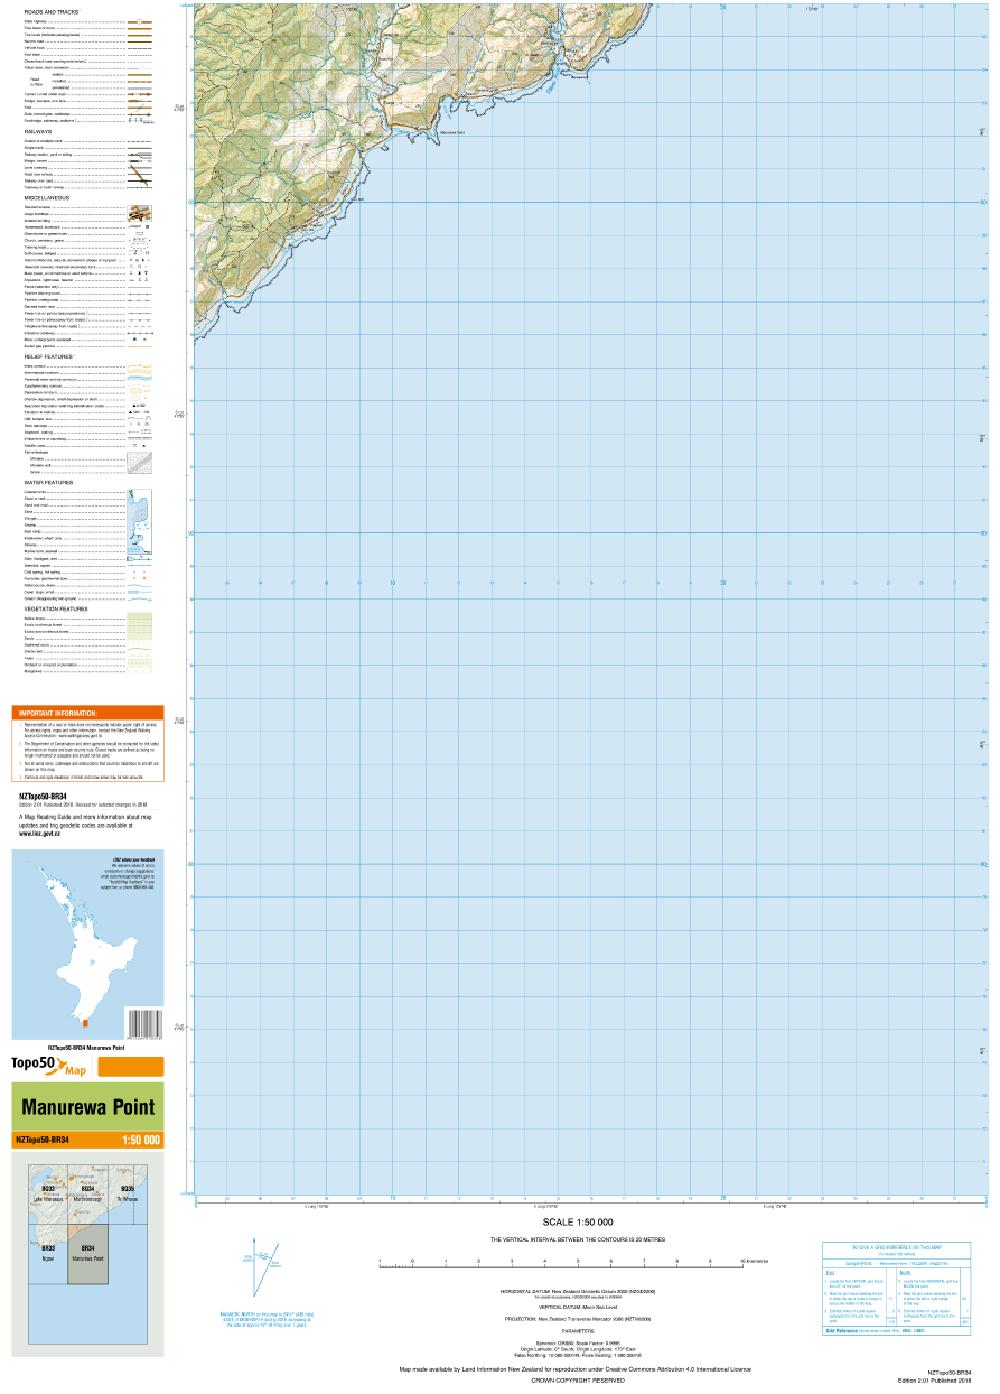 Topo map of Manurewa Point